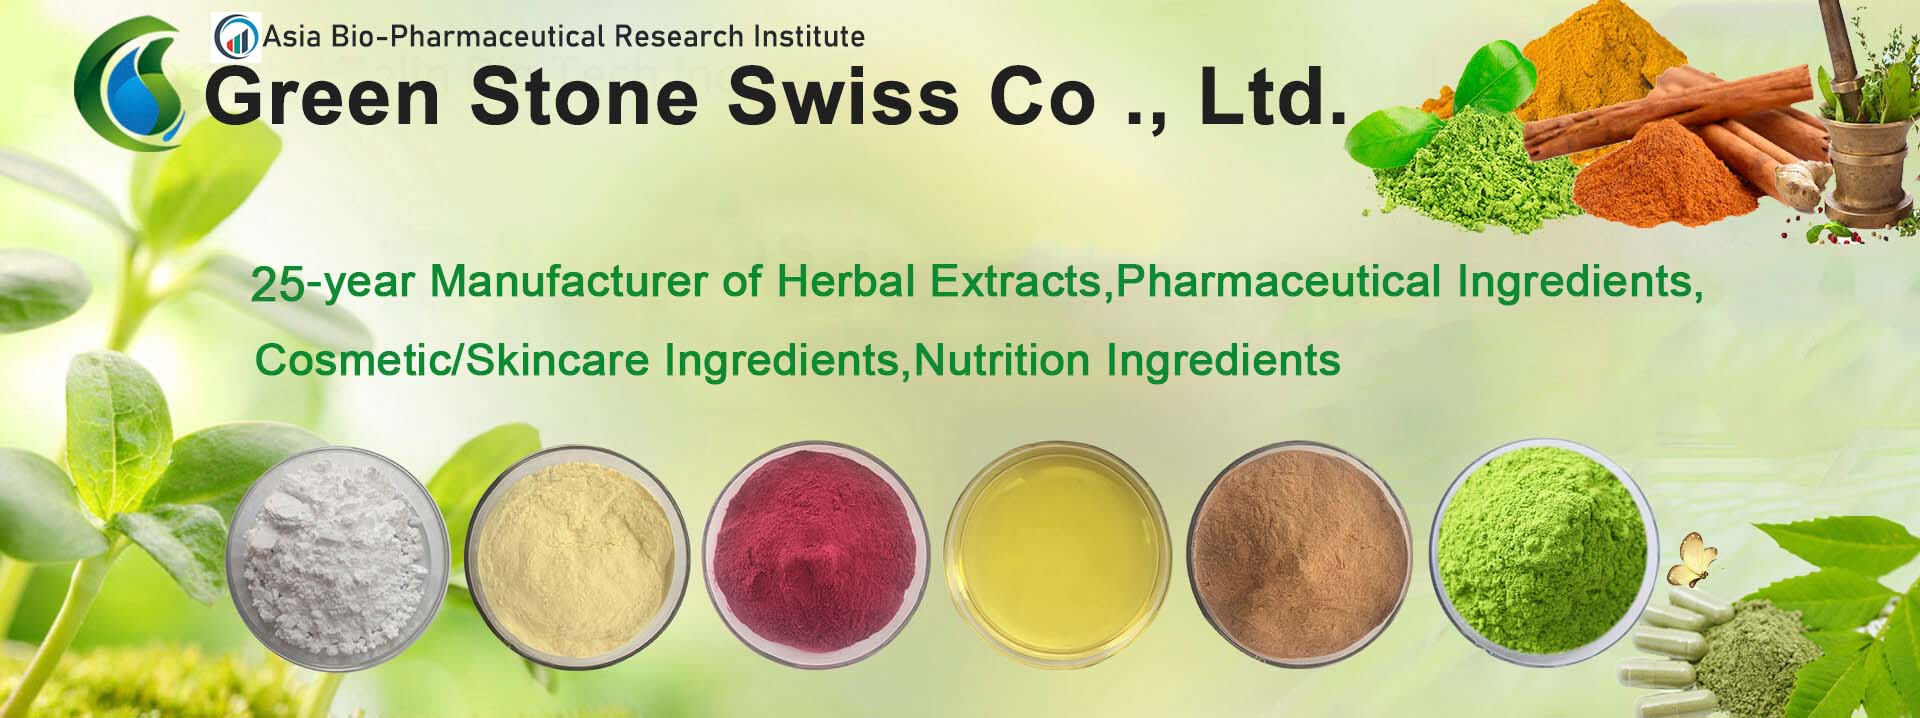 Fabricante de extractos de hierbas, ingredientes farmacéuticos, ingredientes cosméticos / para el cuidado de la piel, ingredientes nutricionales desde hace 25 años